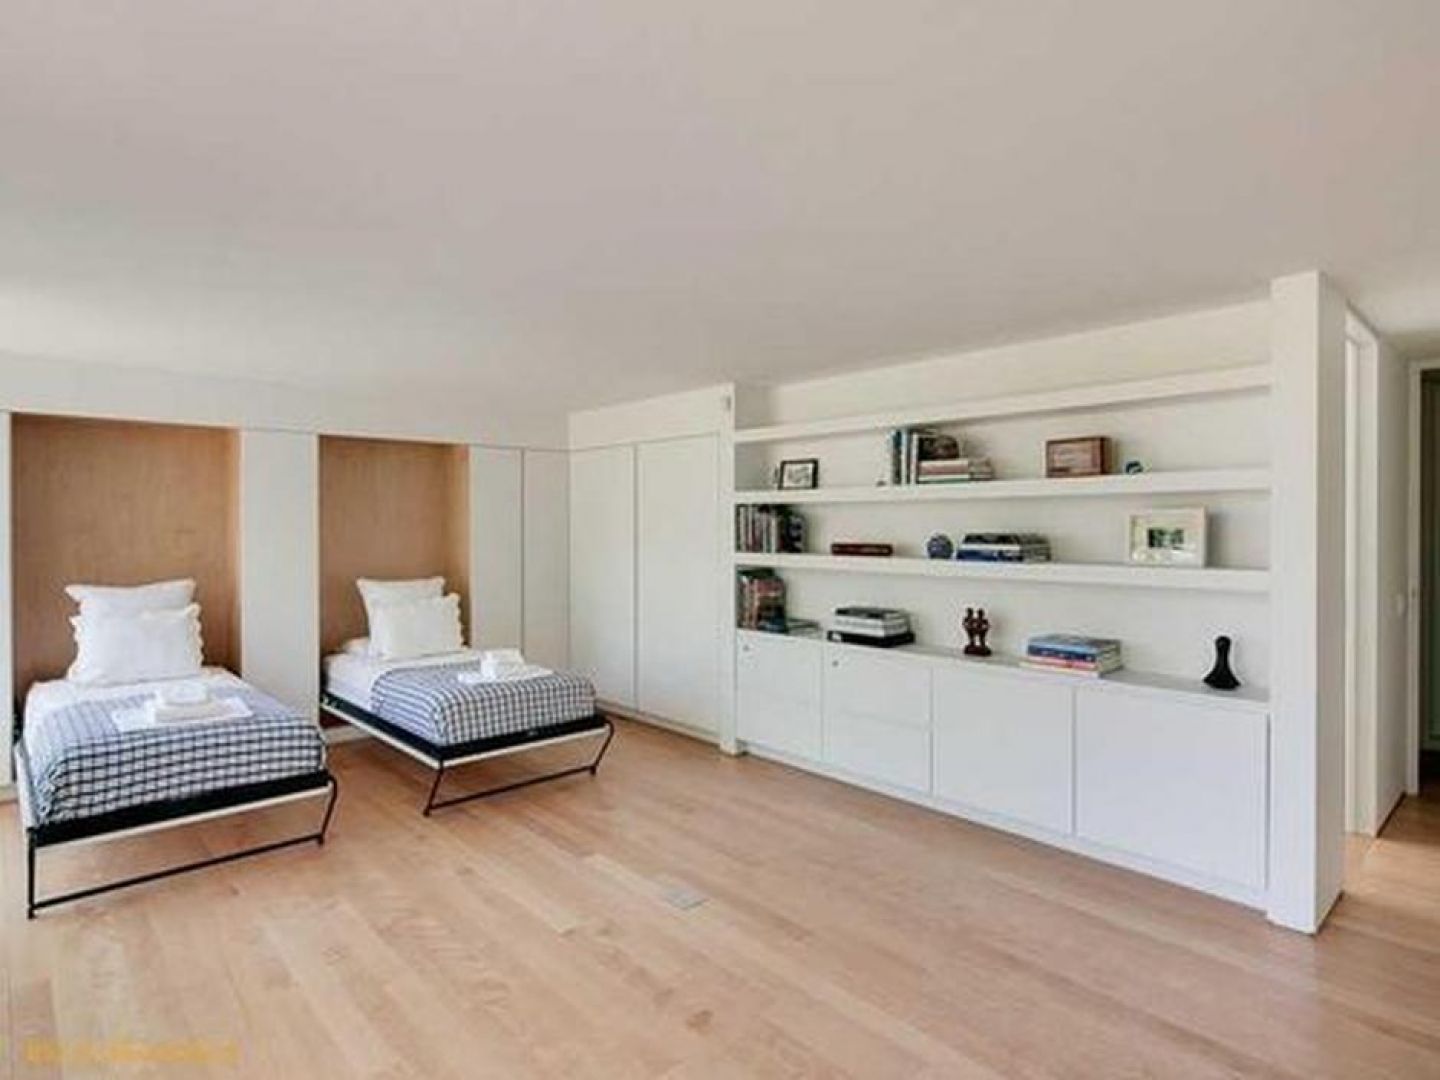 Wnętrza domu urządzono w jasnym, minimalistycznym stylu. Dominuje w nich biel ocieplona jasnym drewnem. Fot. Paul Warchol